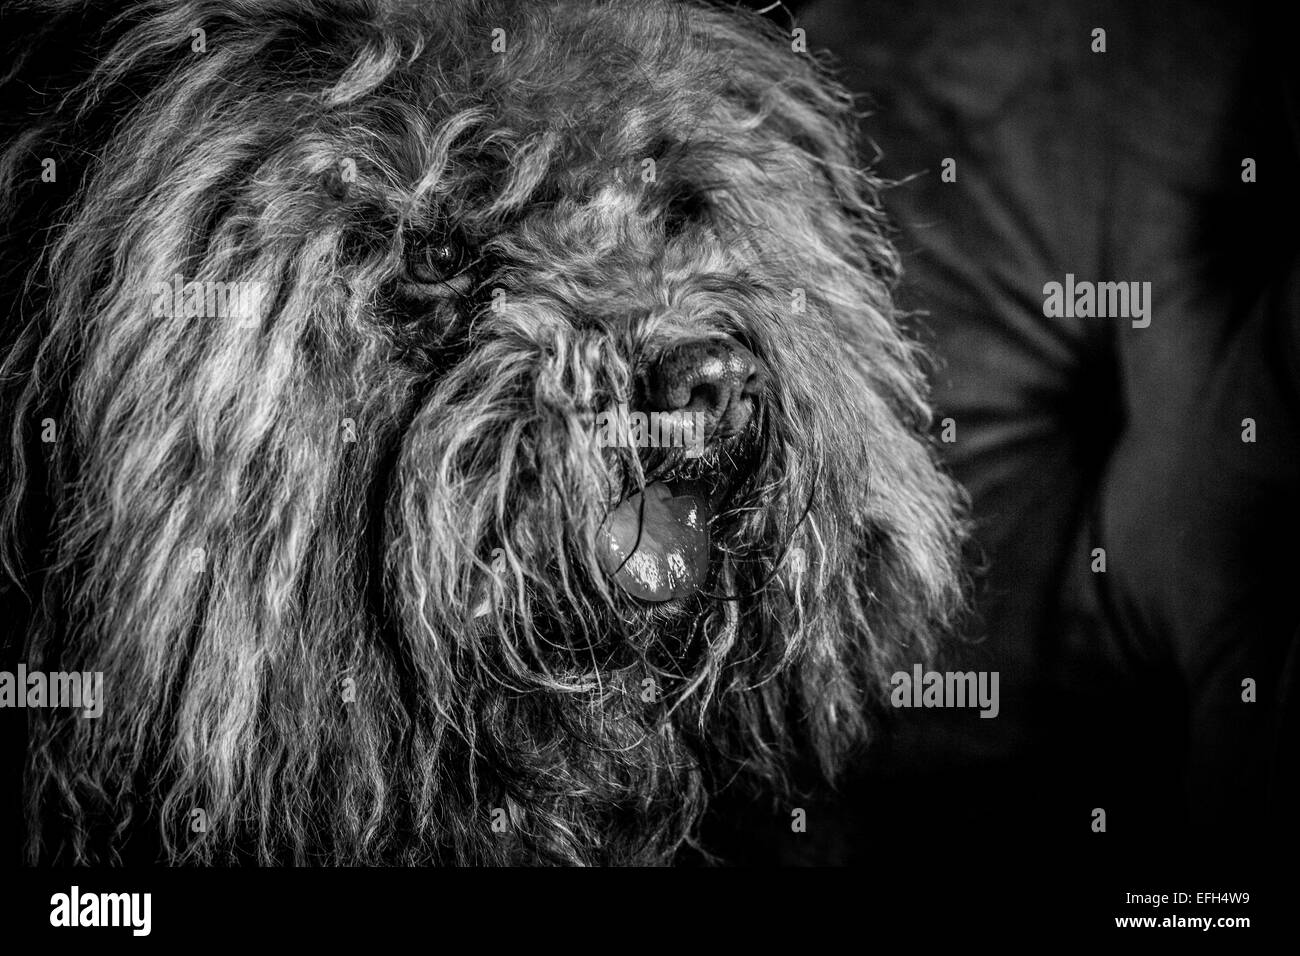 Portrait de chien d'eau hongrois aux cheveux longs (puli) avec la langue qui sort, noir et blanc Banque D'Images